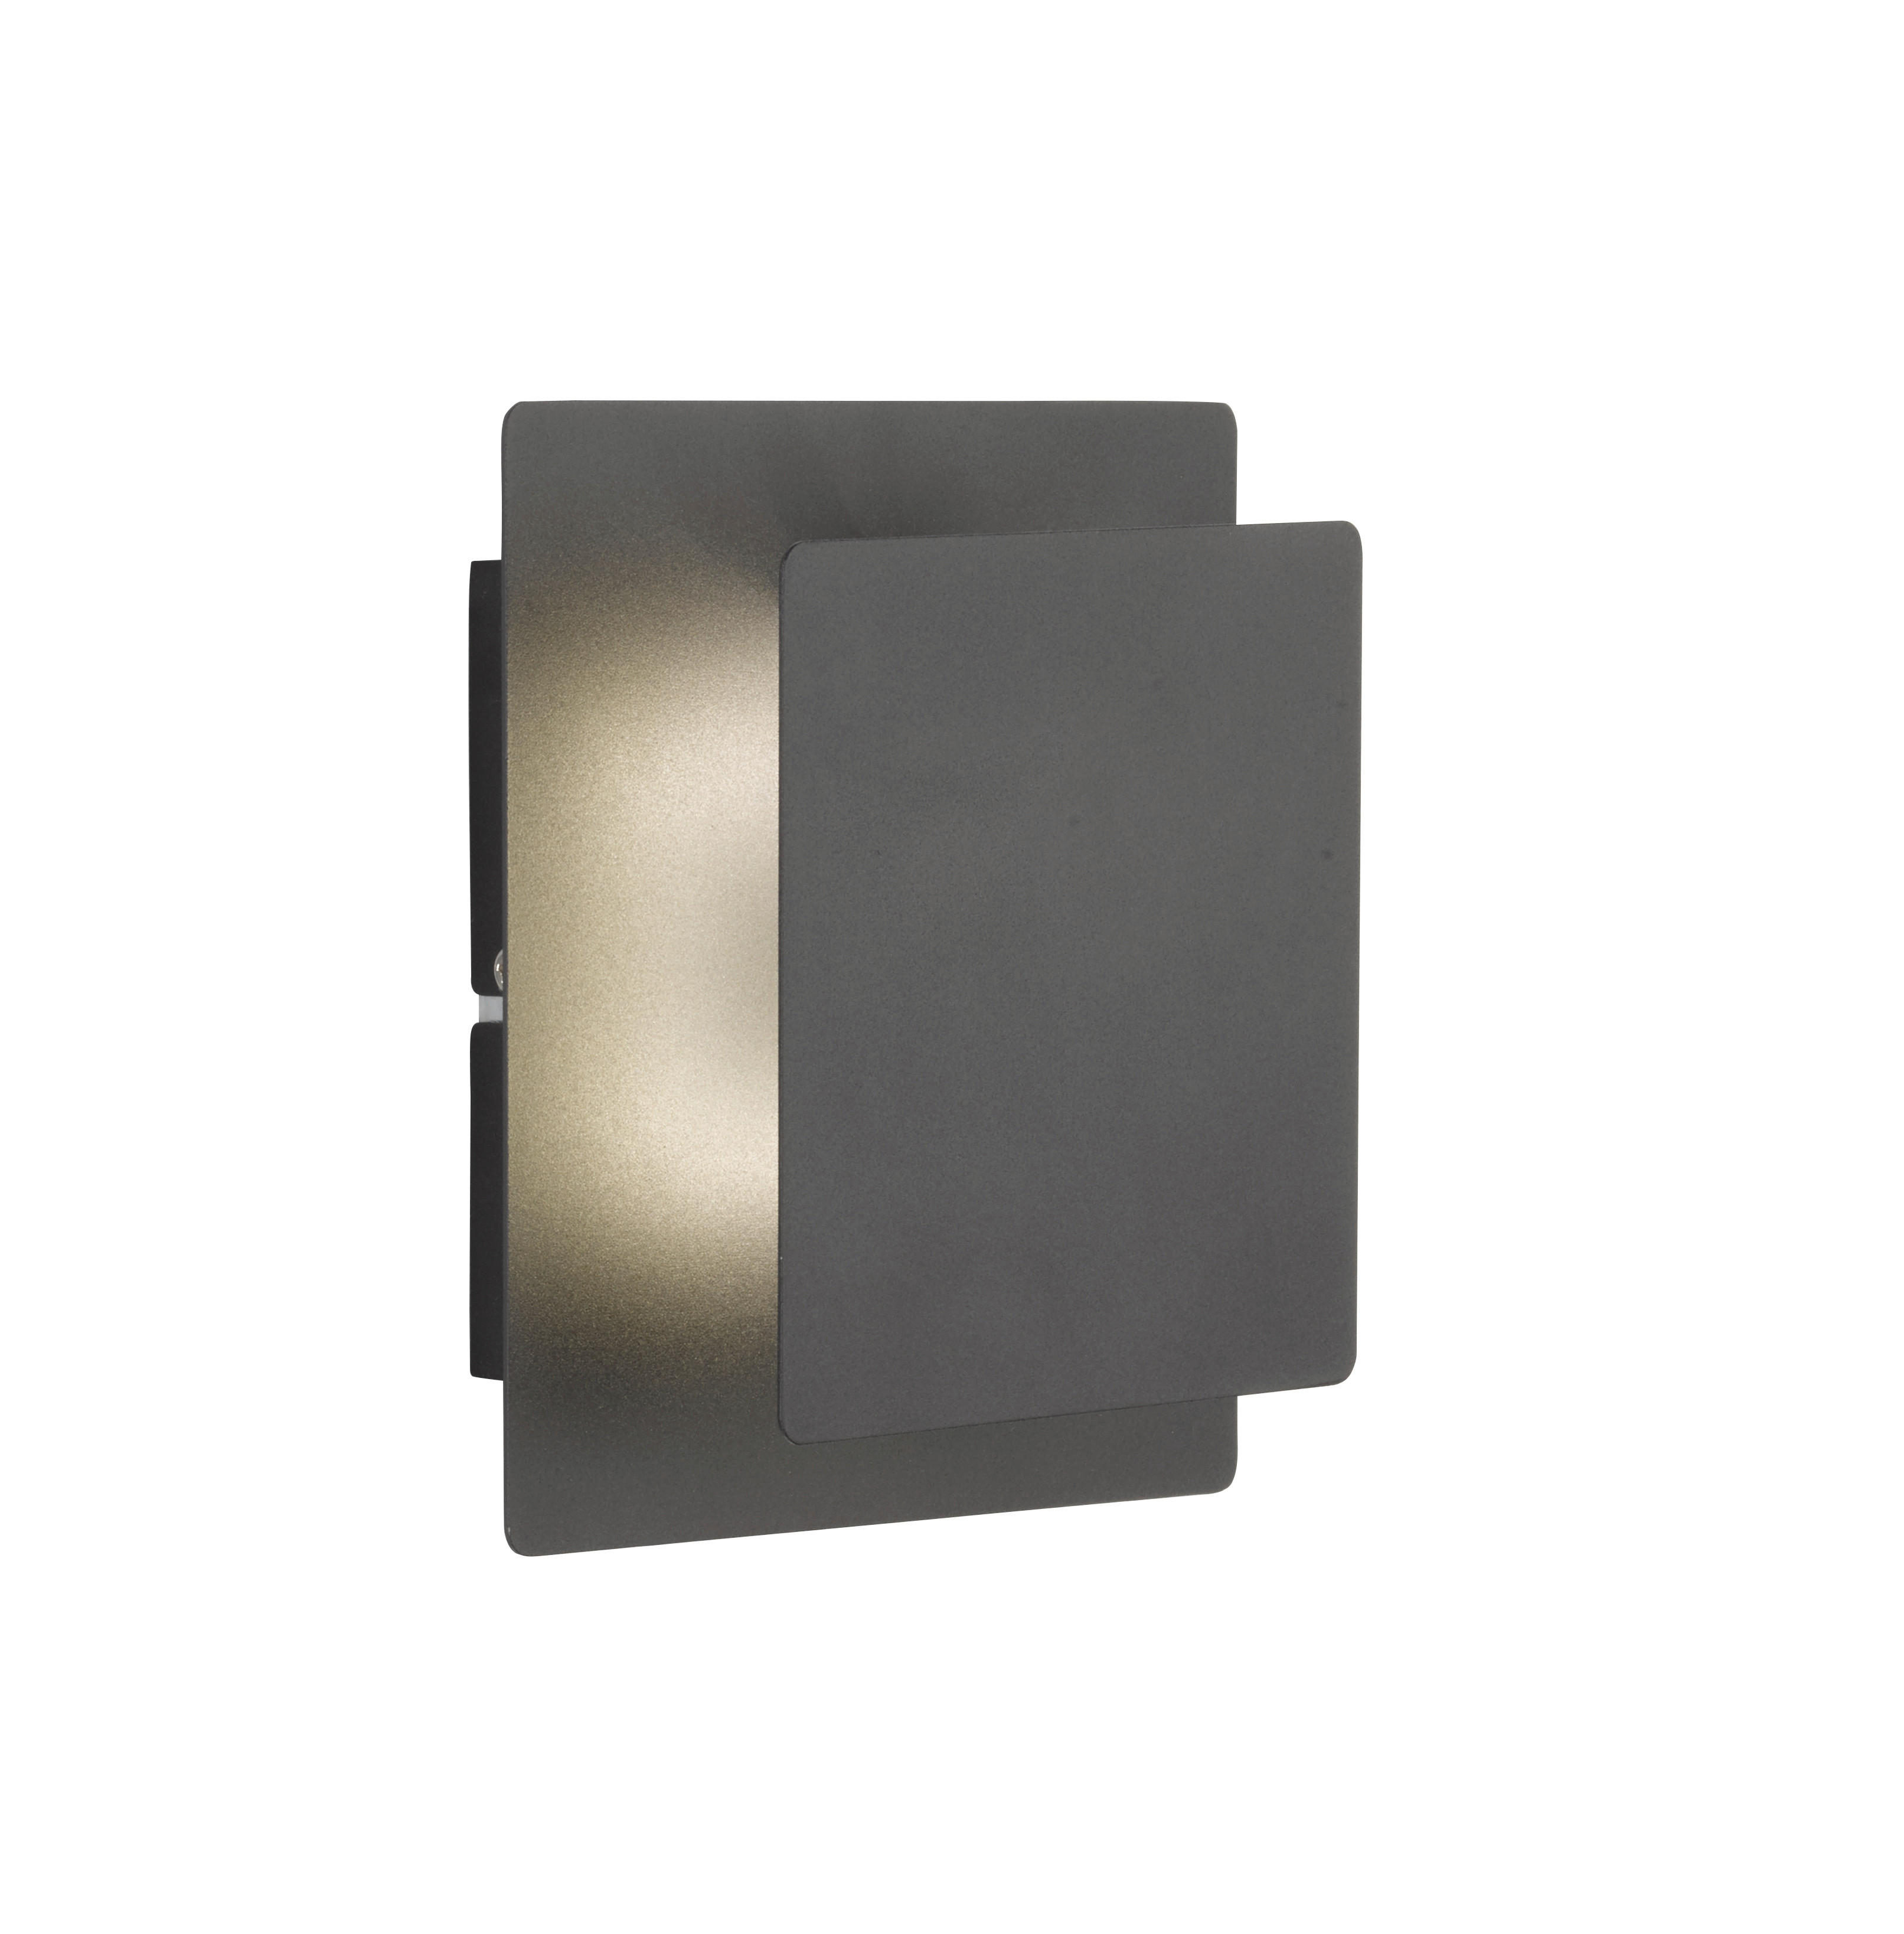 LED-WANDLEUCHTE 18/14/6,5 cm   - Schwarz, Design, Kunststoff/Metall (18/14/6,5cm) - Globo